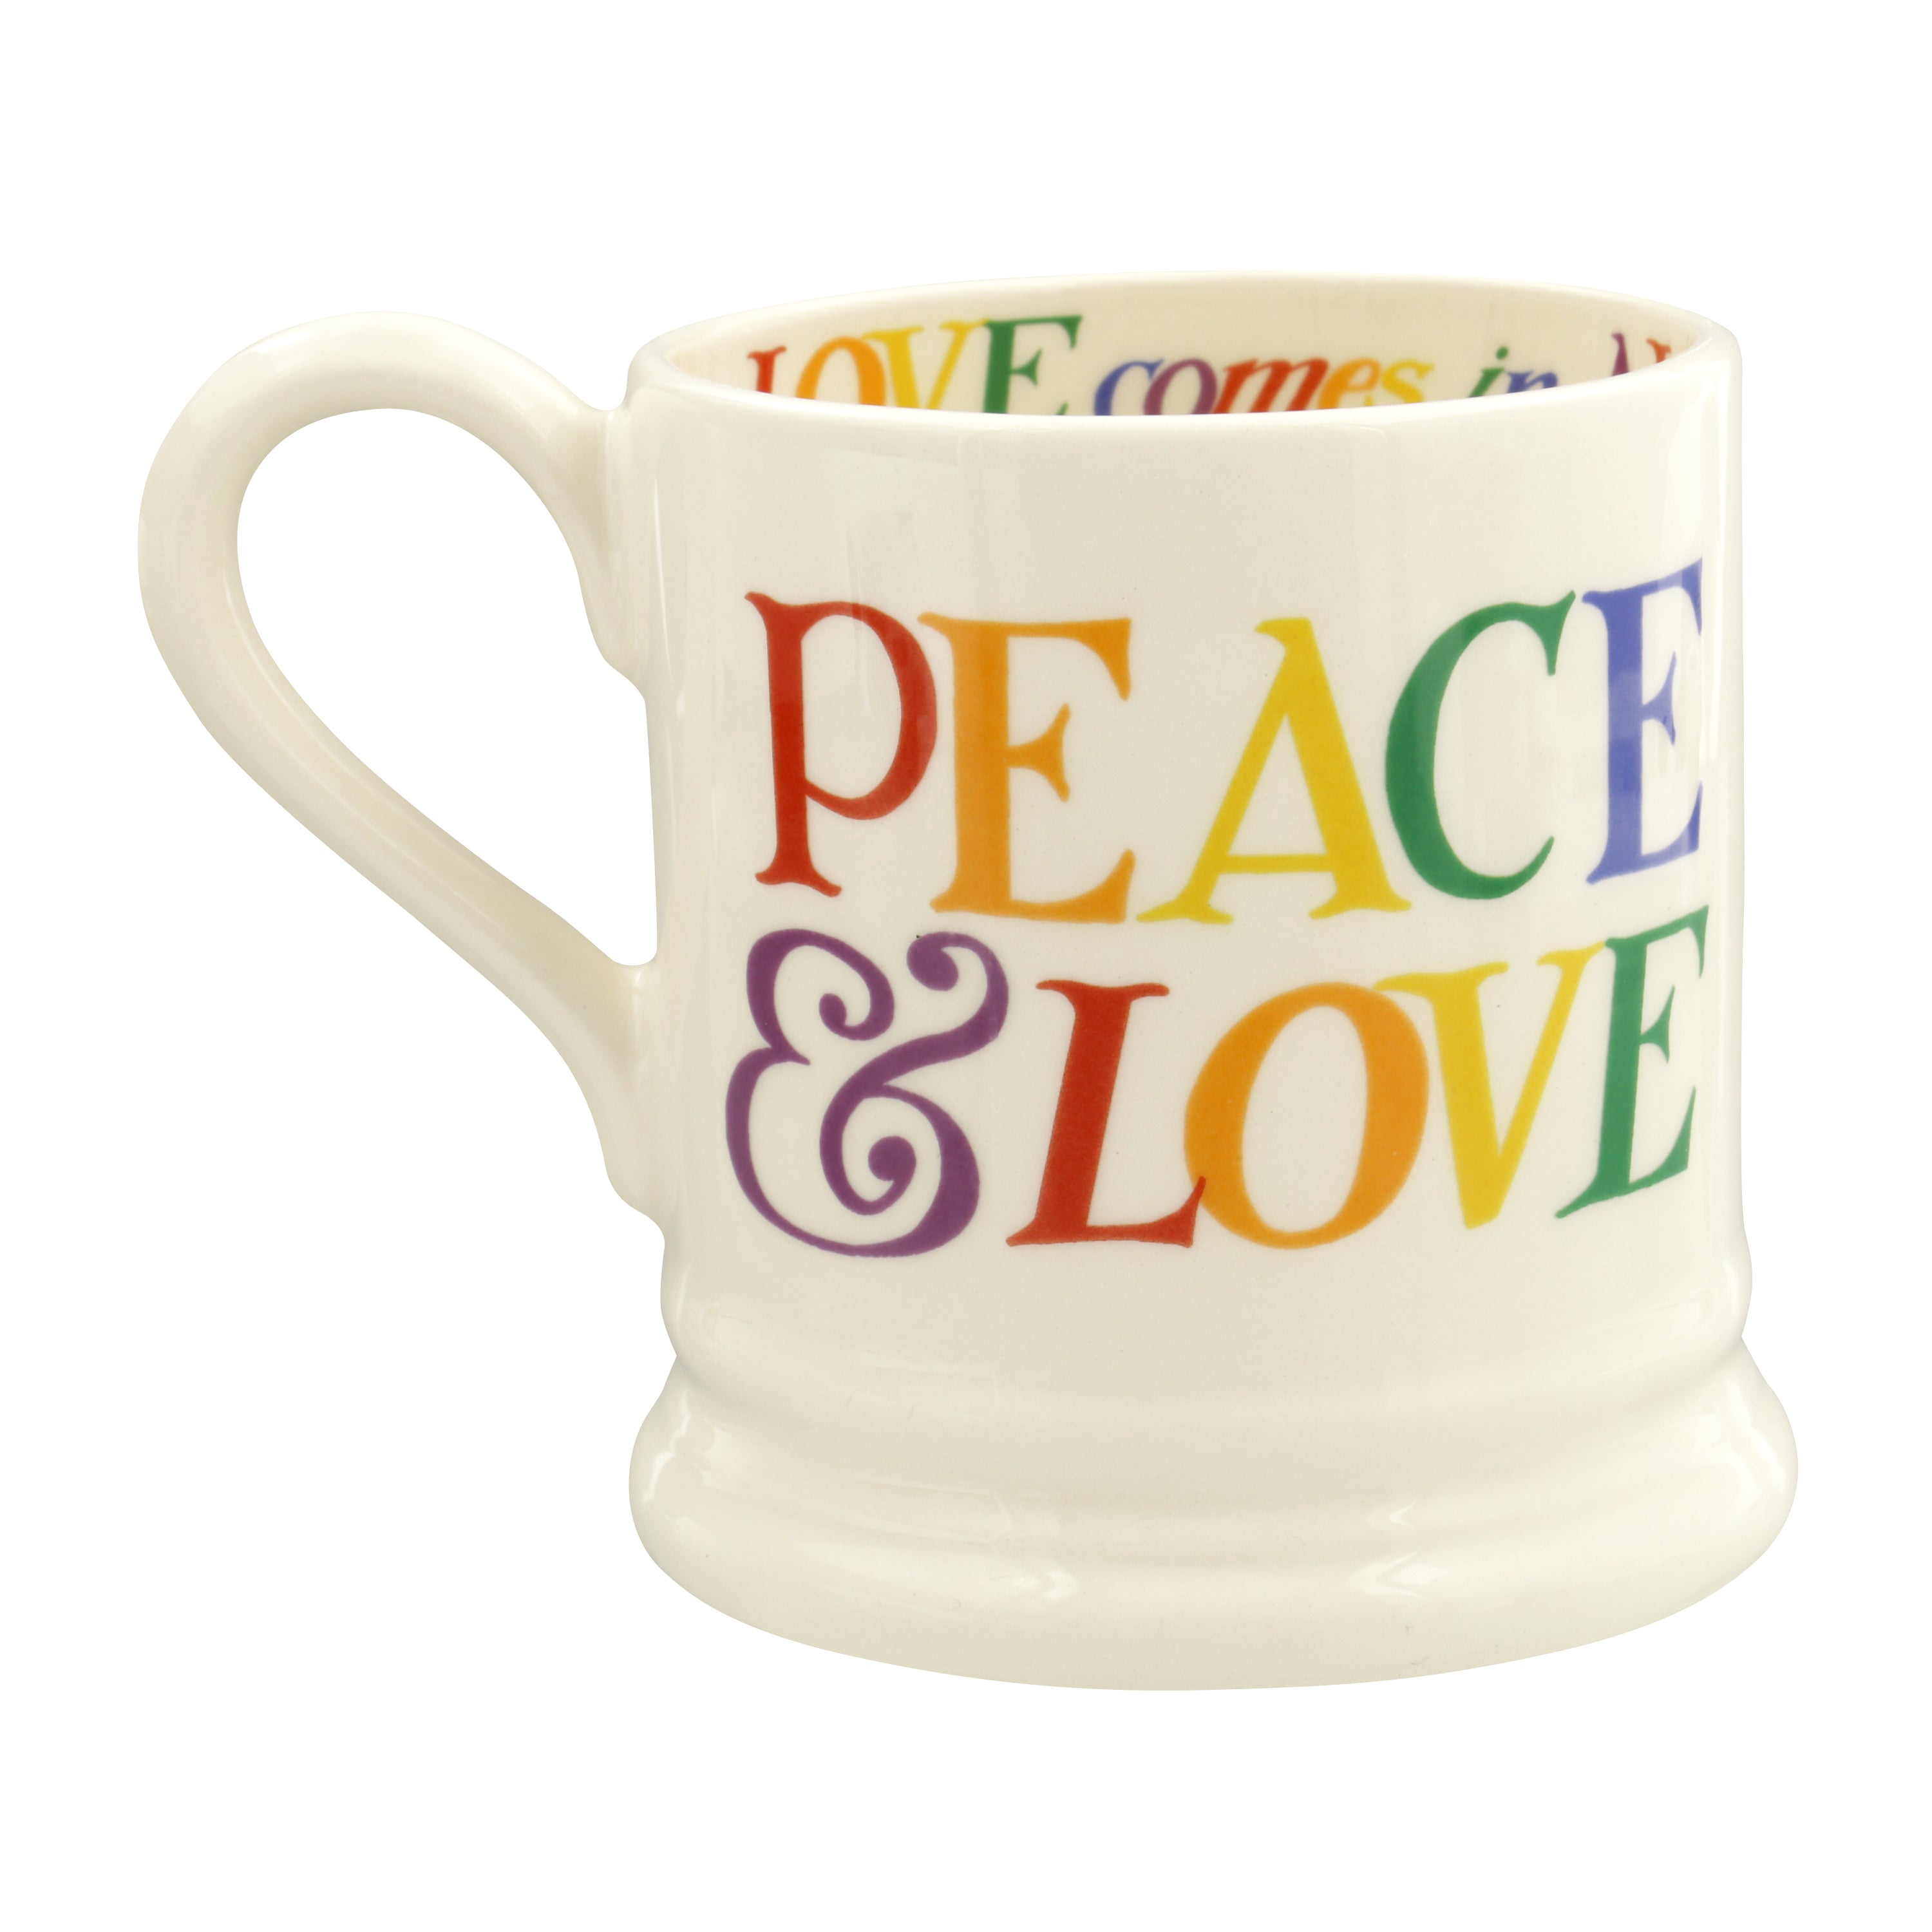 Rainbow Toast Love is Love 1/2 Pint Mug